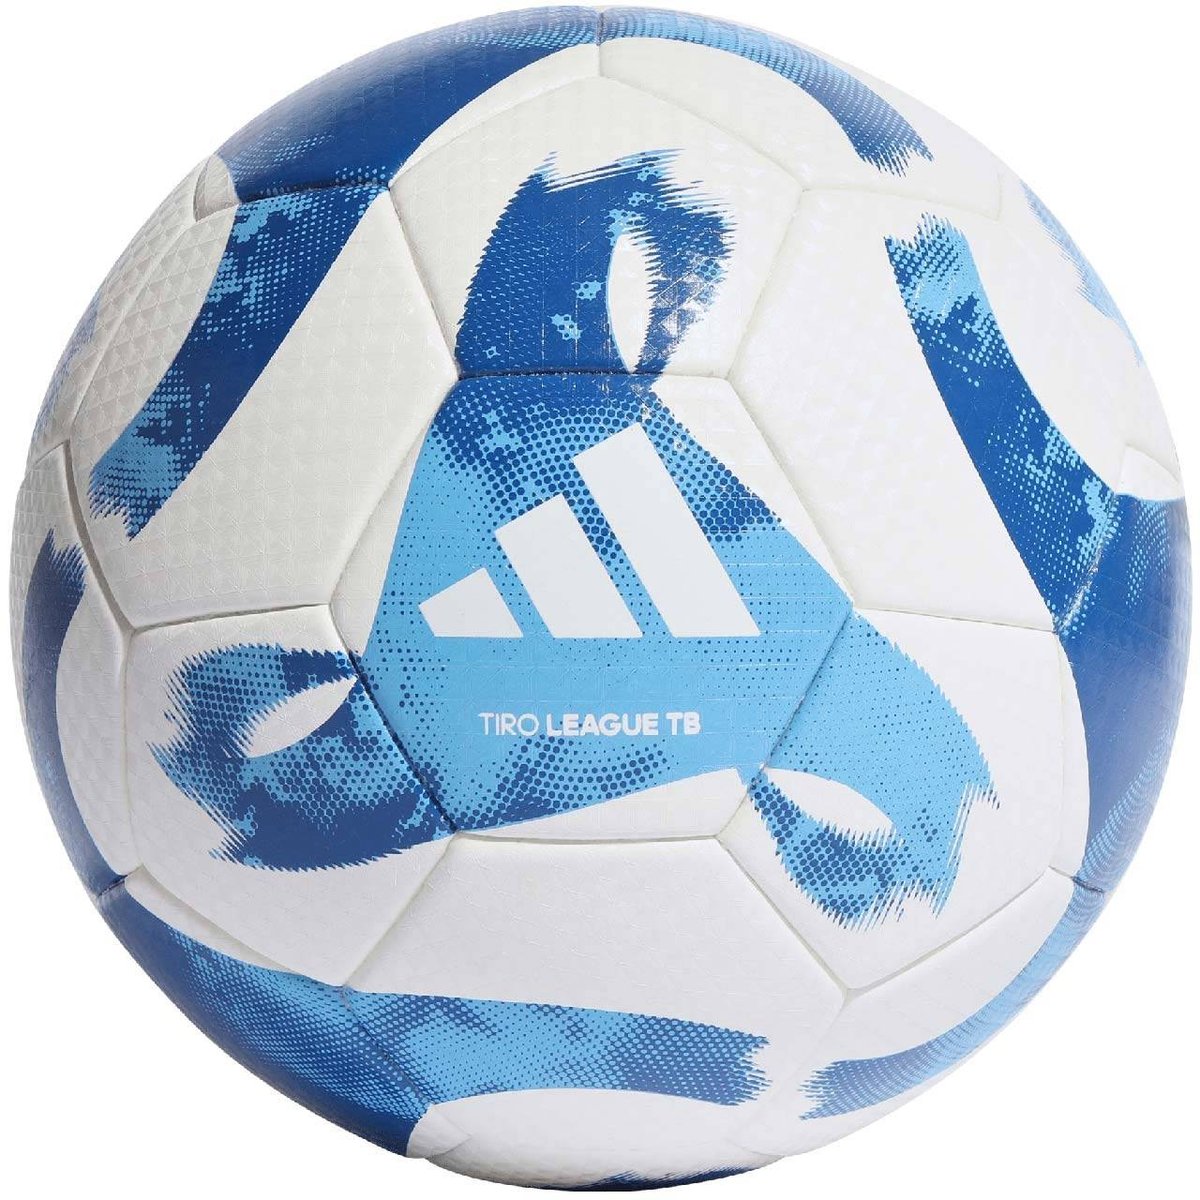 Zdjęcia - Pozostałe akcesoria Adidas Piłka Nożna  Tiro League Thermally Bonded Biało-Niebieska Ht2429-4 